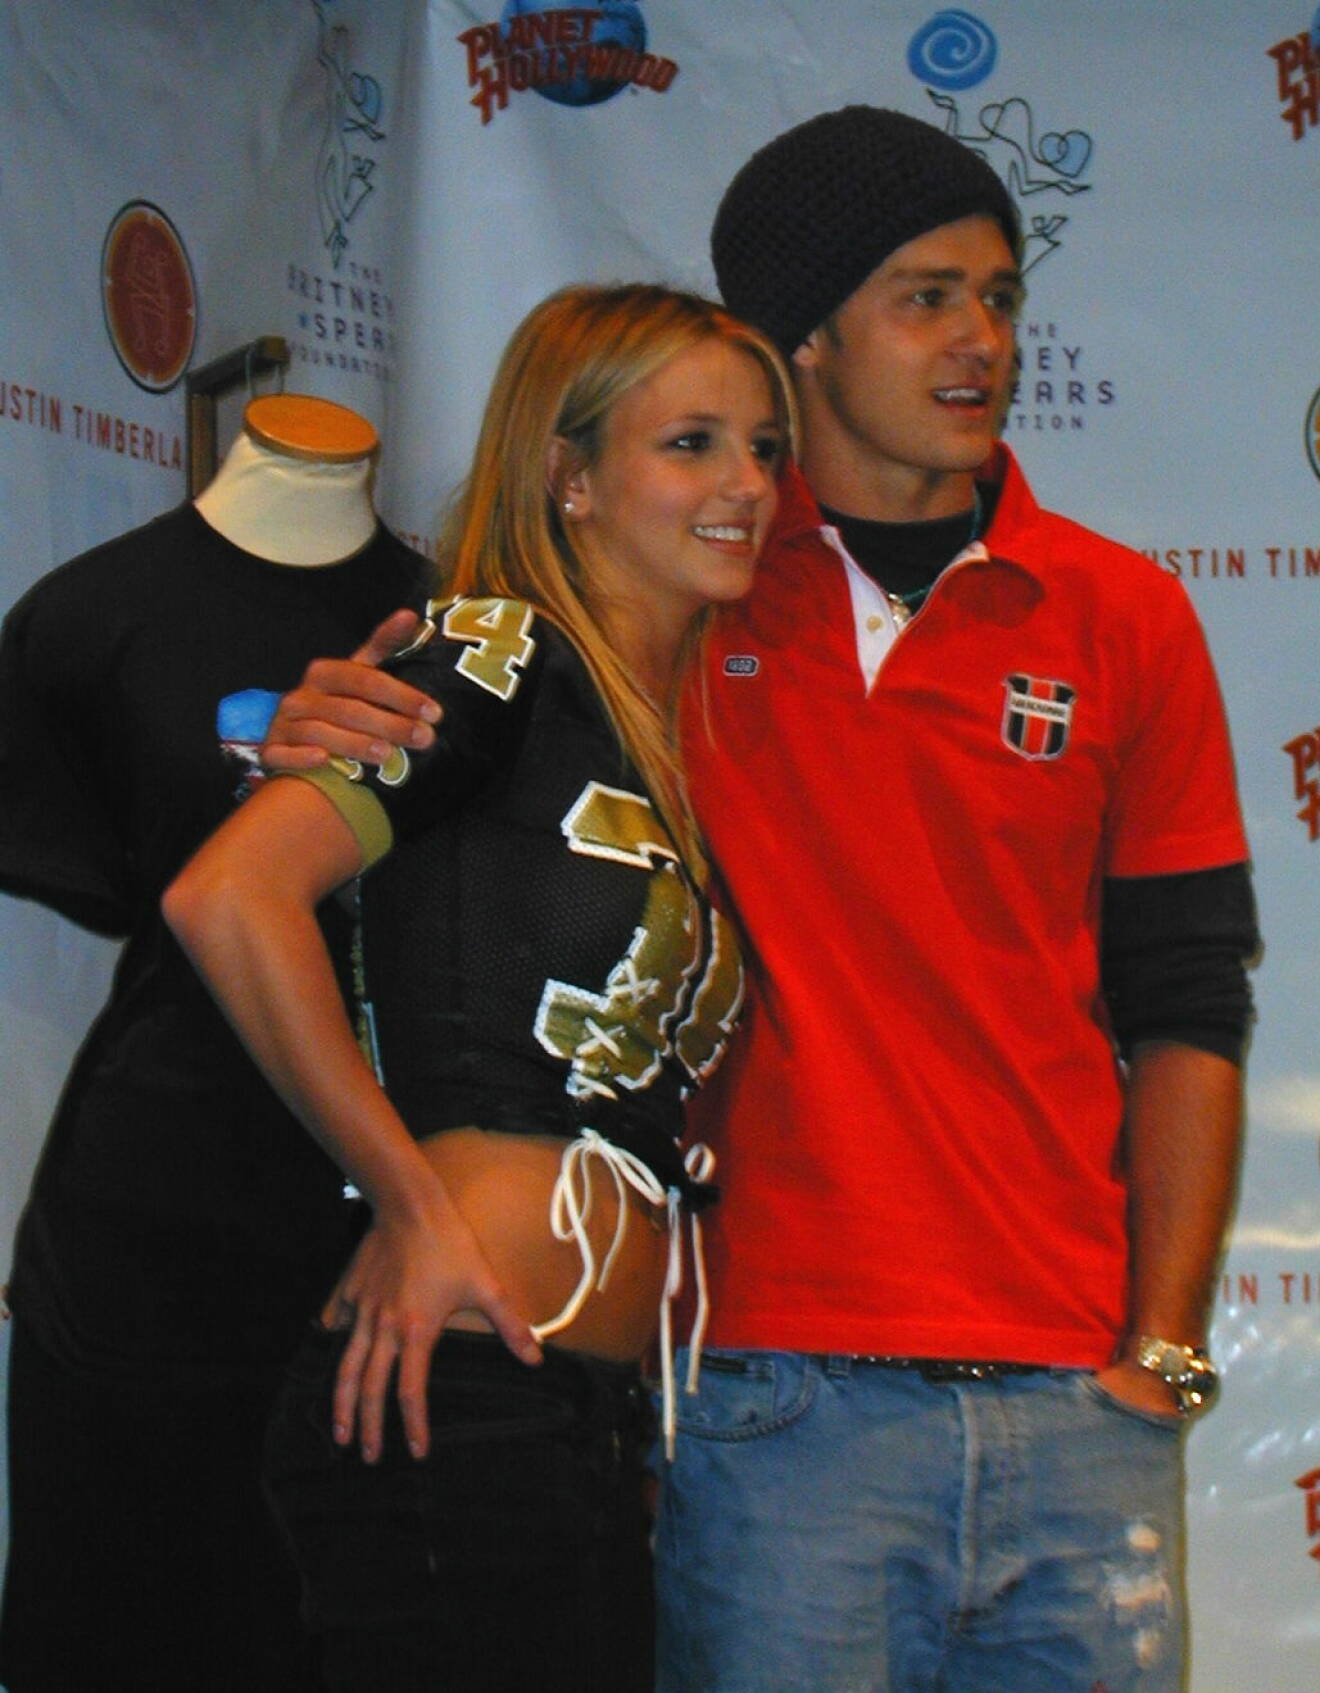 Artisterna Britney Spears och Justin Timberlake var ett par ett par år in på 2000-talet.